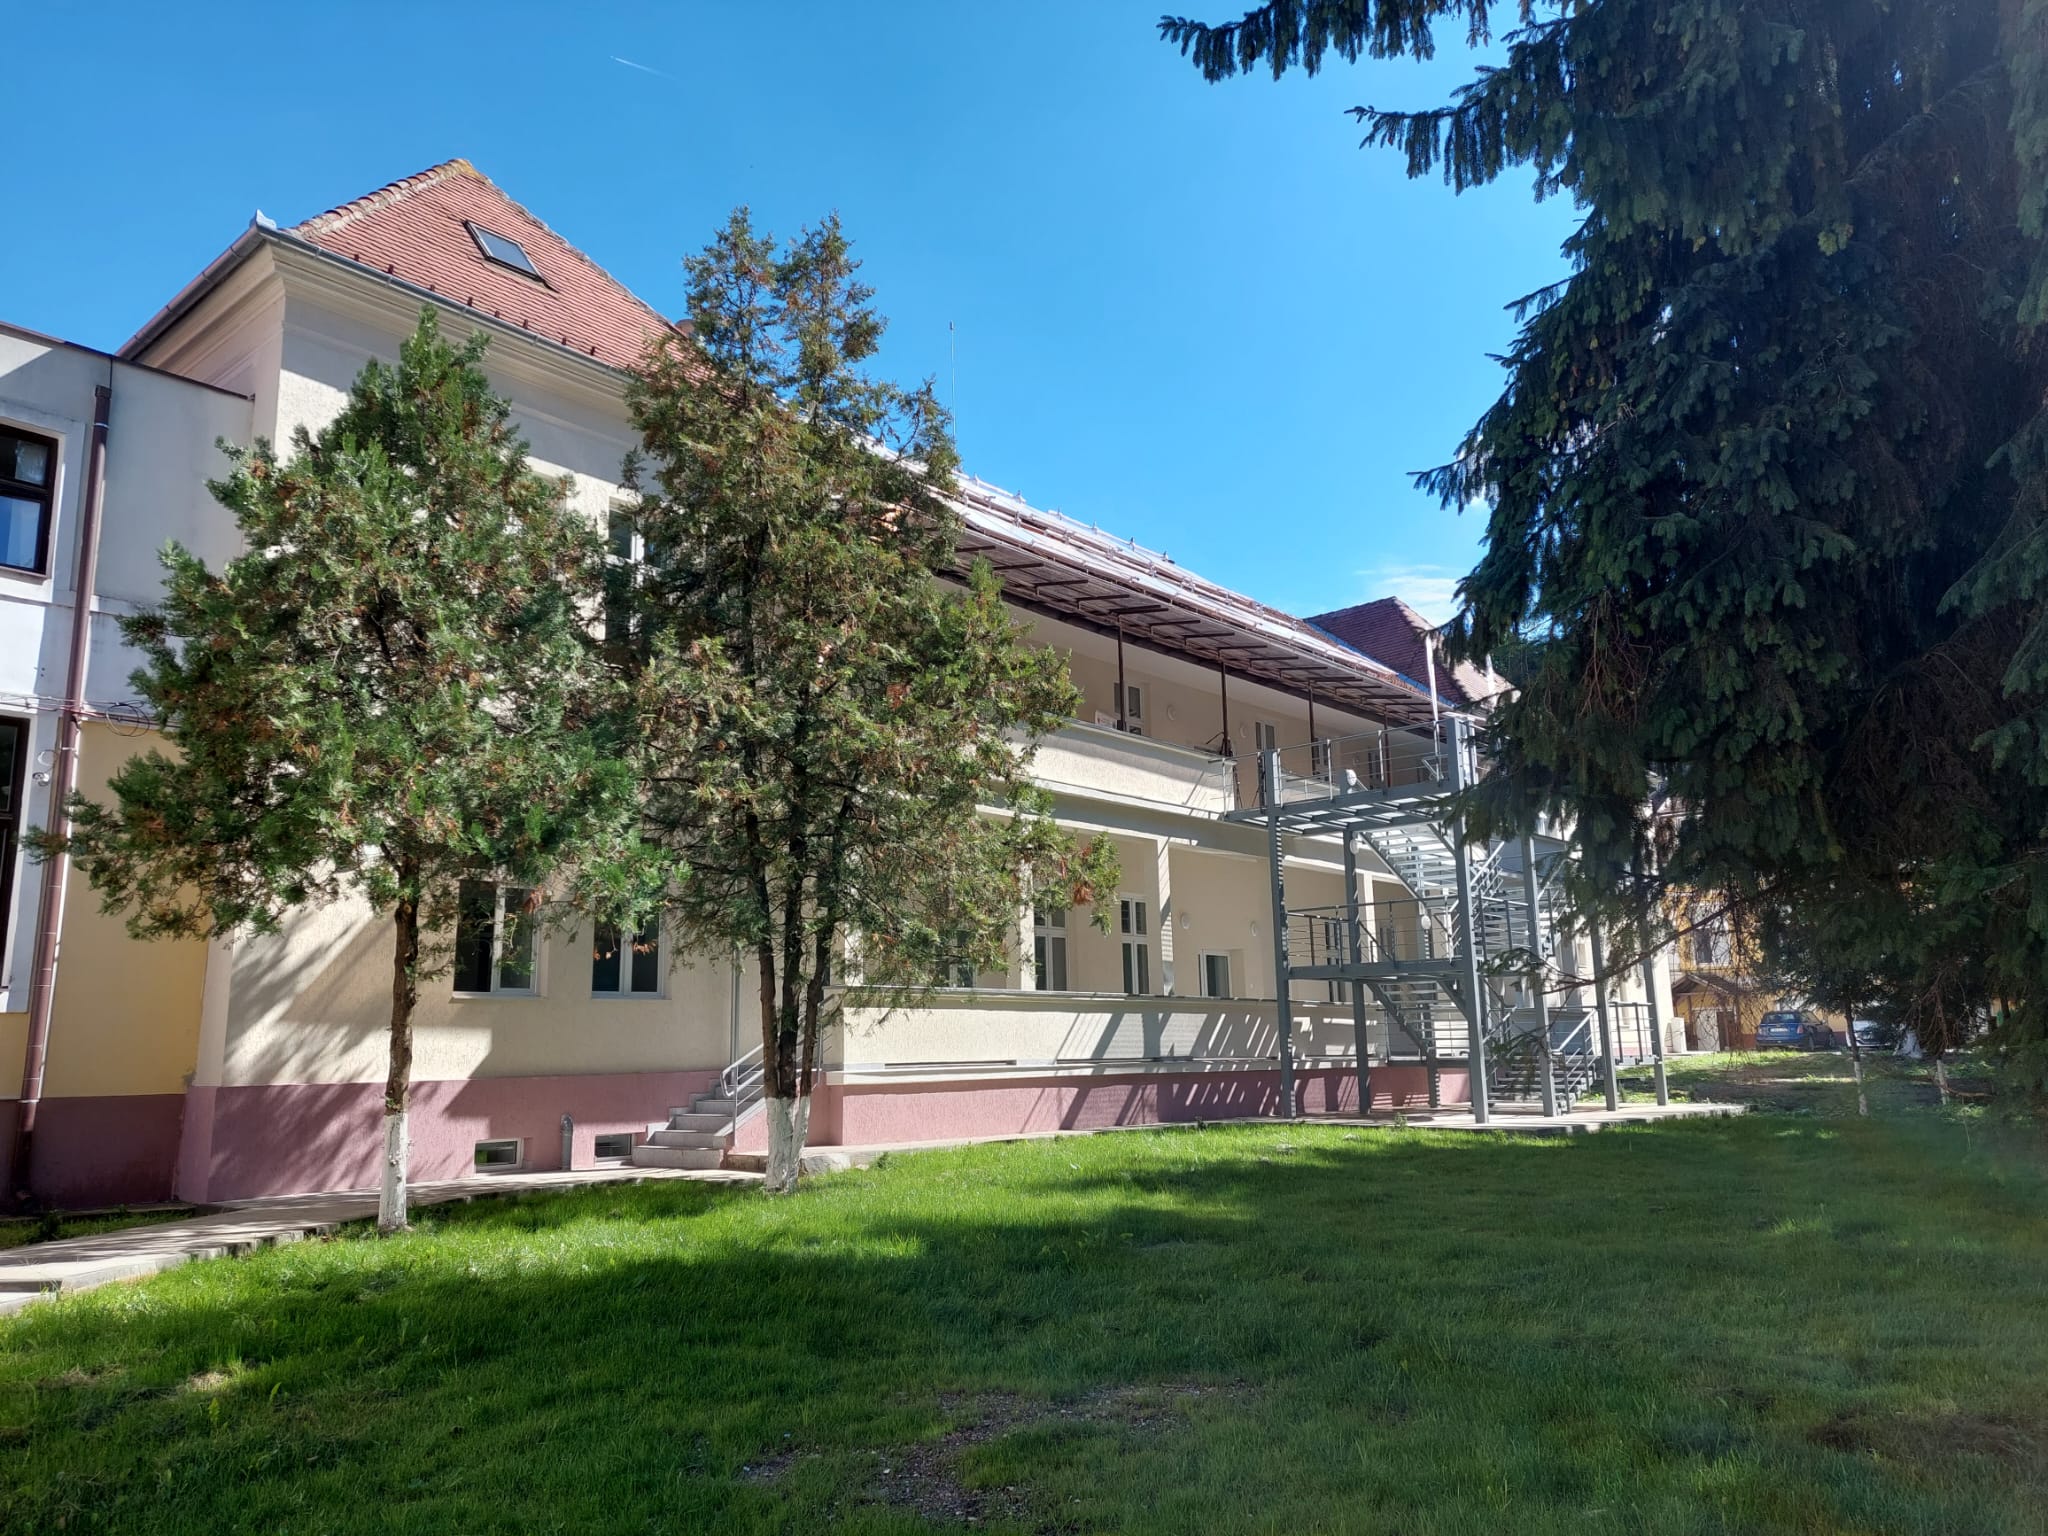 Saloane separate pentru copii la spitalul TBC Sibiu, după ce două pavilioane au fost complet renovate